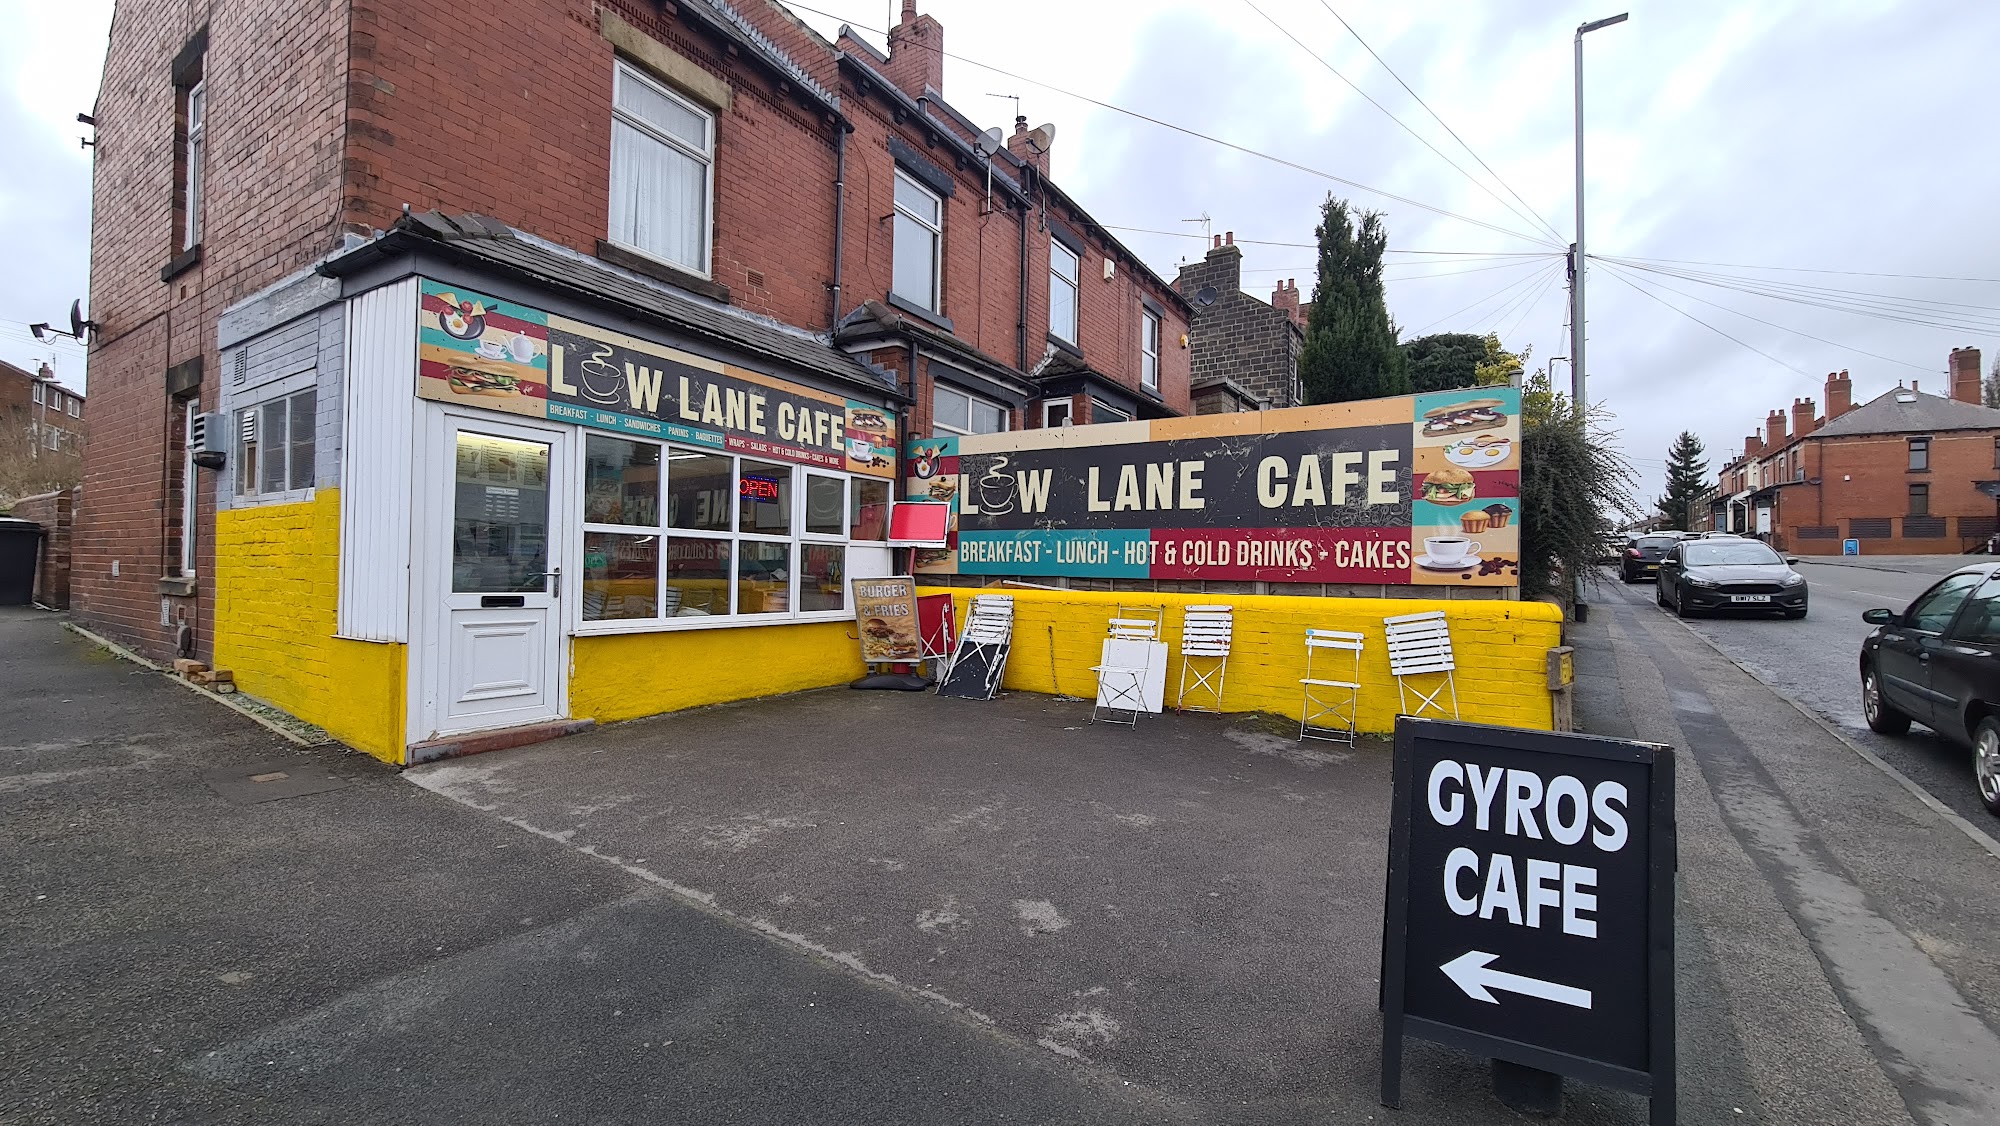 Low Lane Cafe